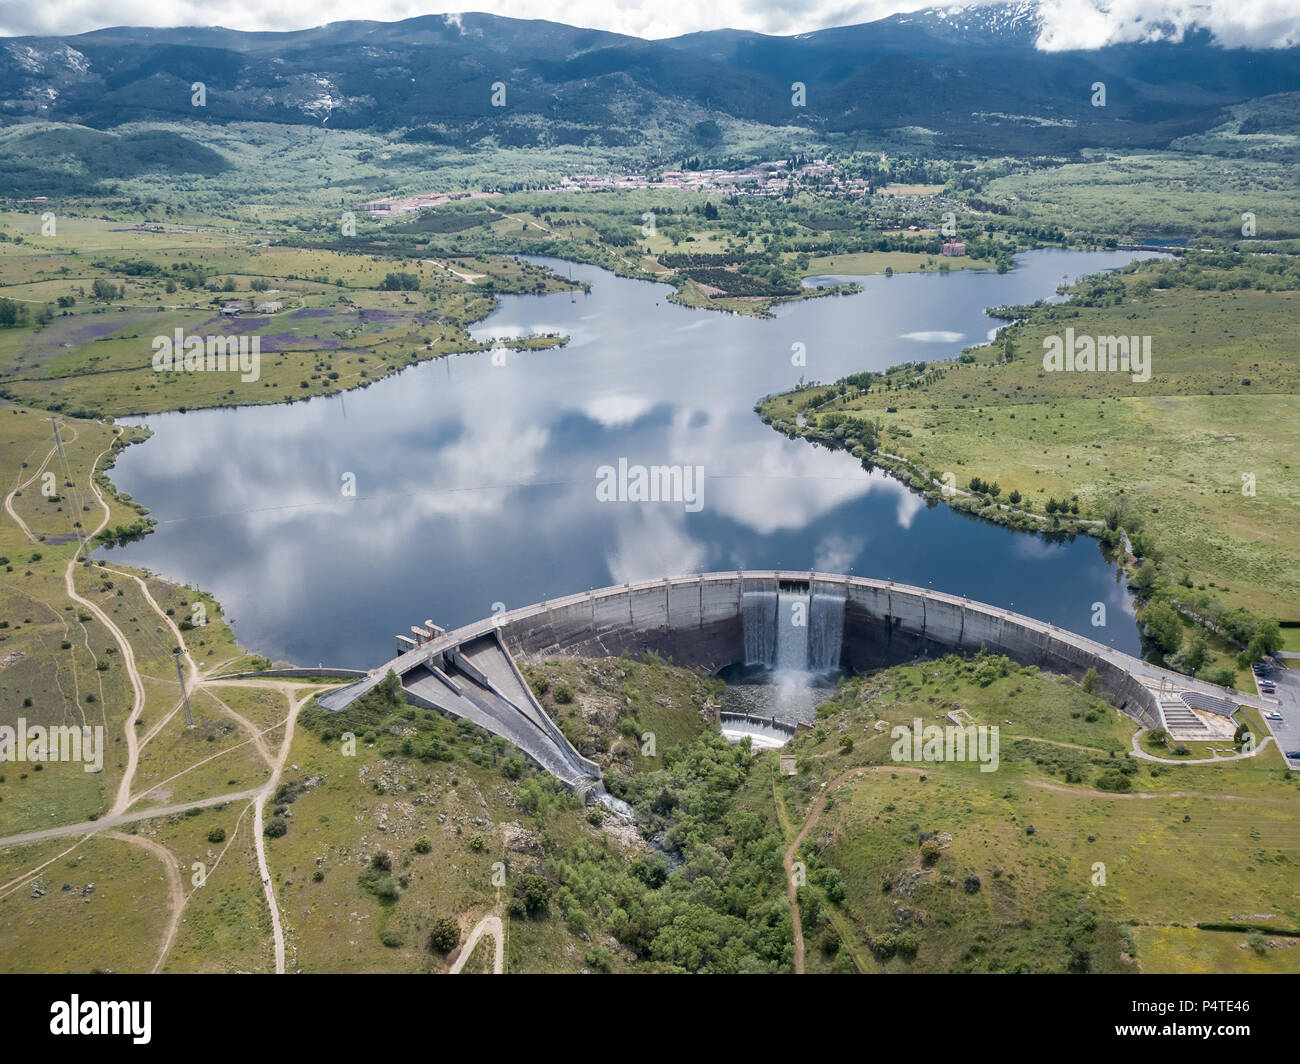 aerial view to dam over Eresma river, Segovia (Spain). Pontoon Reservoir Stock Photo